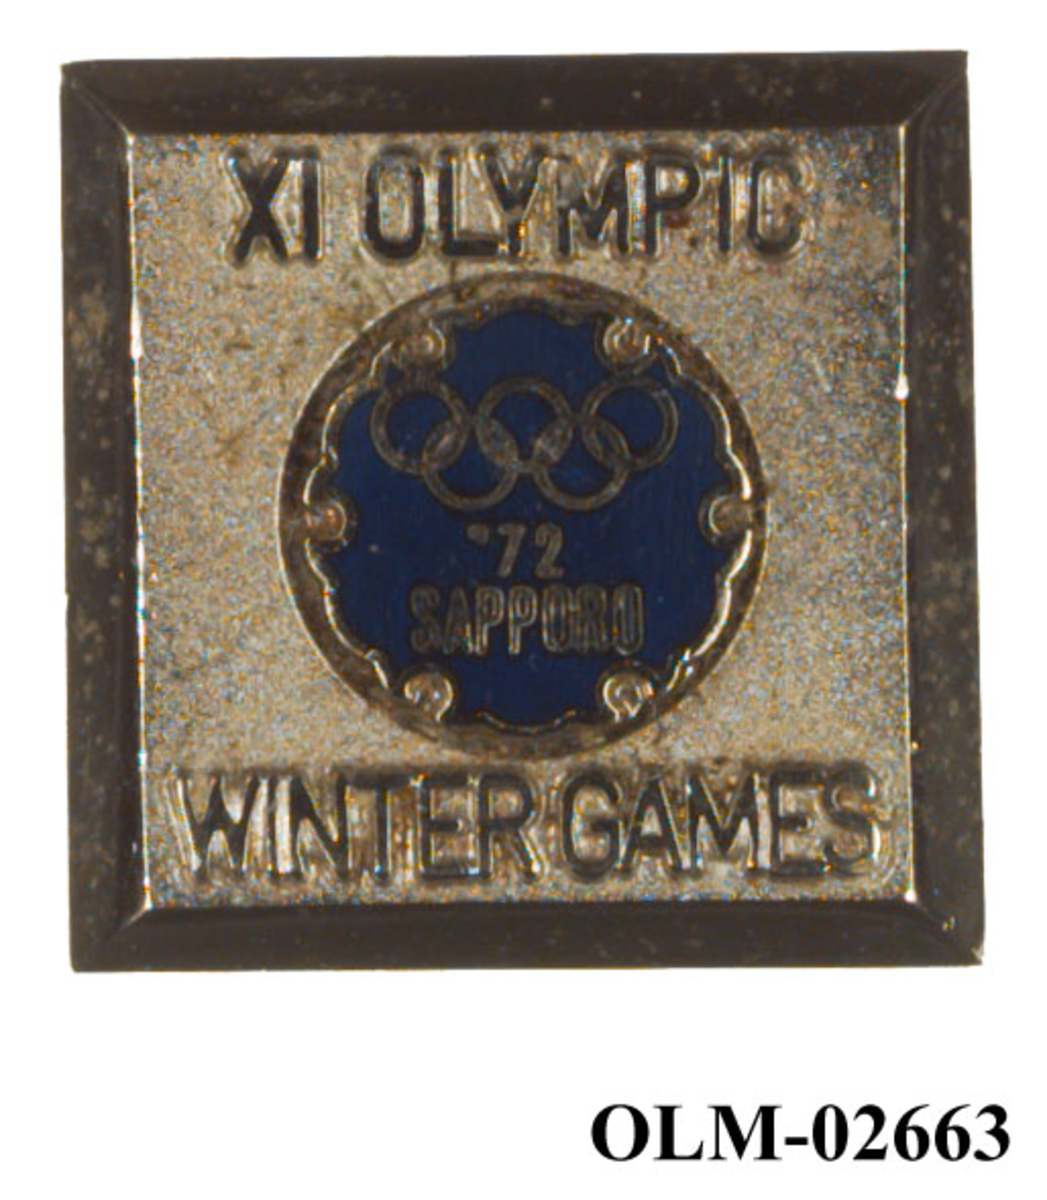 Sølv- og blåfarget pins med motiv av de olympiske ringene.